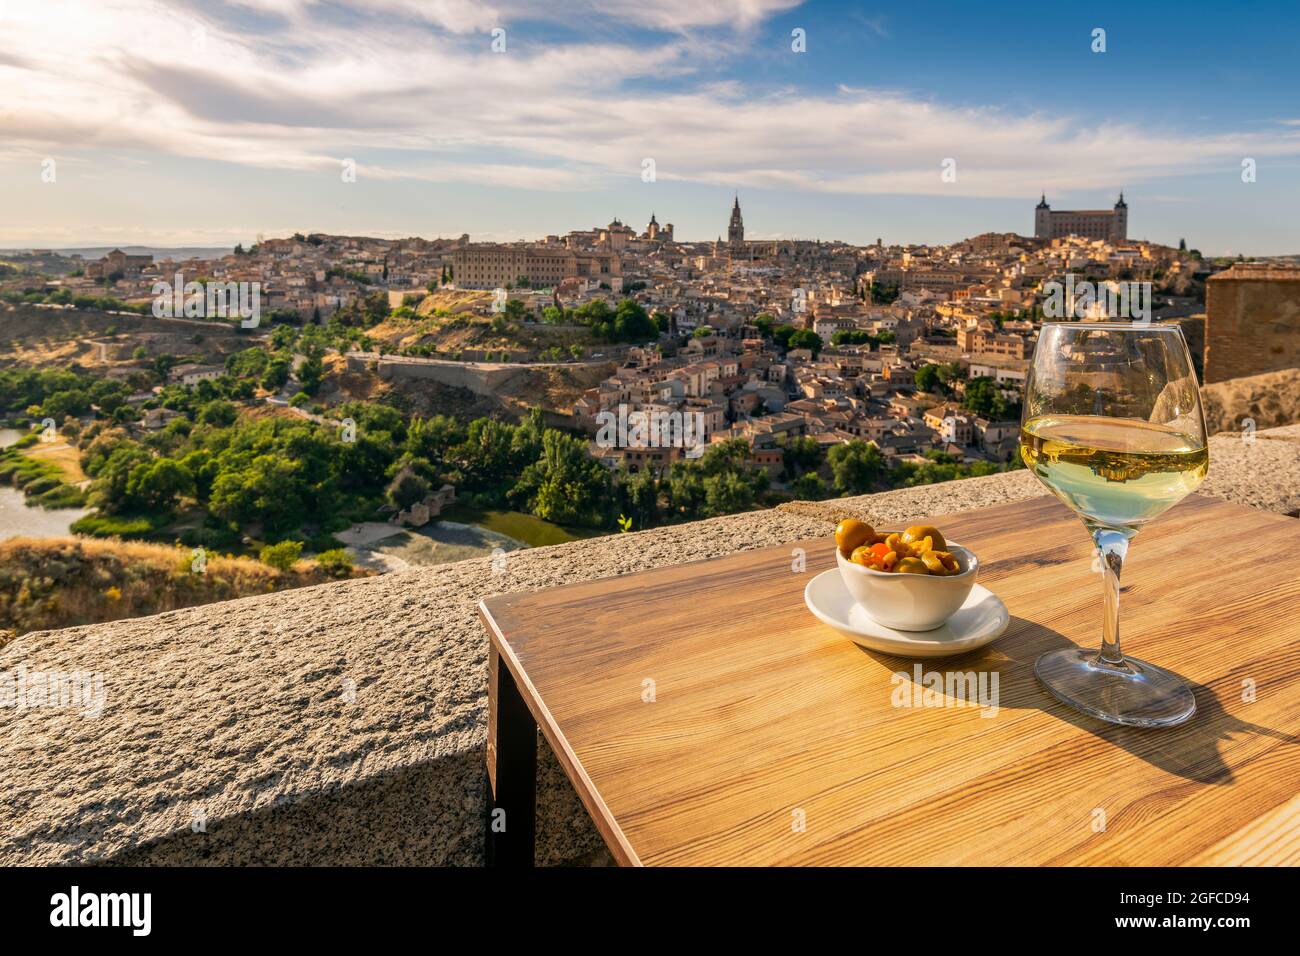 Verre de vin blanc avec tapas servi sur une table avec vue sur Tolède, Castille-la Manche, Espagne Banque D'Images